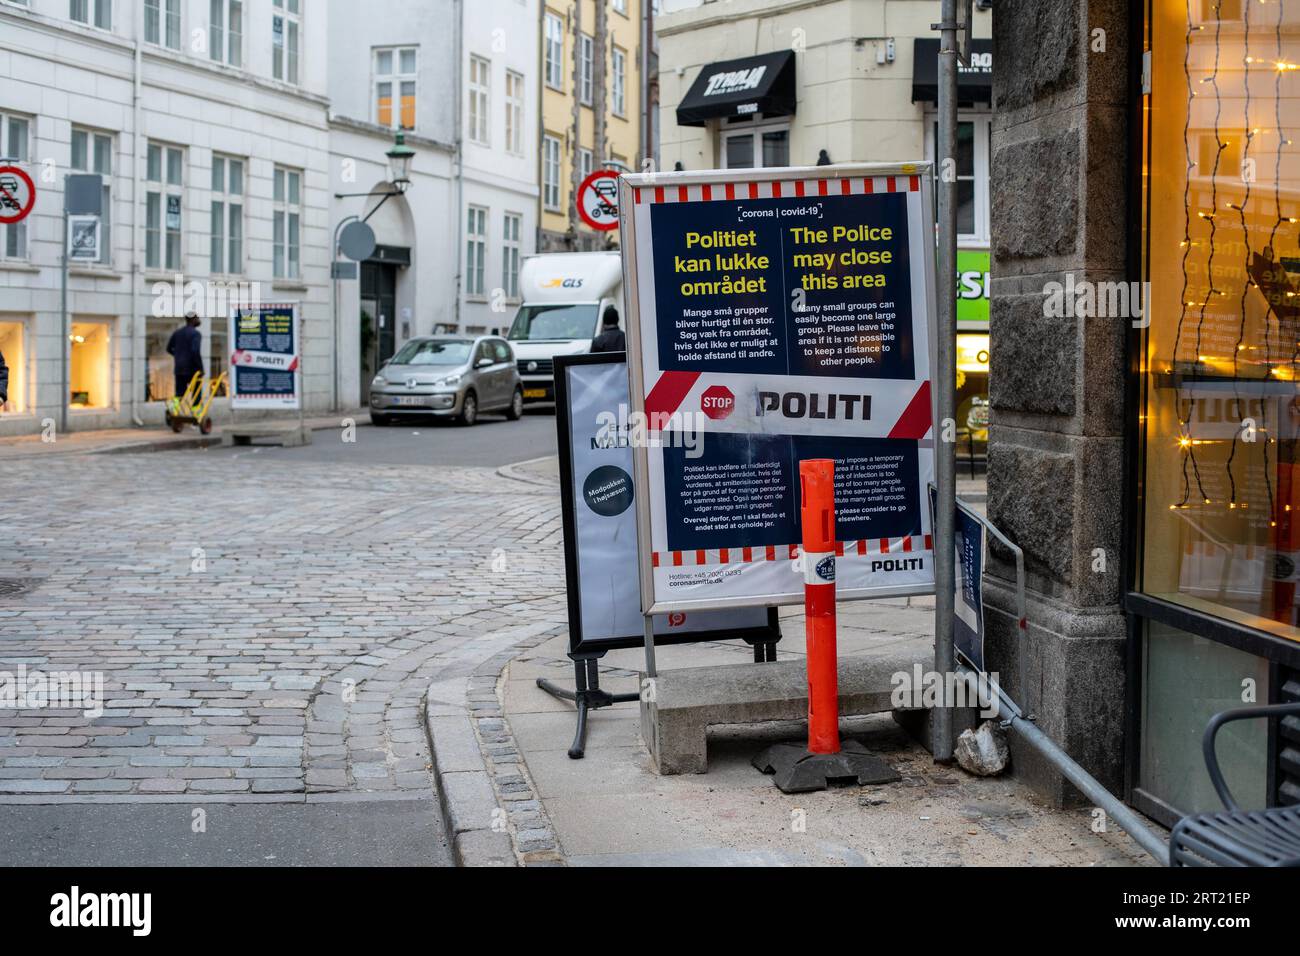 Copenhague, Dinamarca, 5 de noviembre de 2020: Señal de advertencia de la policía en el centro de la ciudad que recuerda a las personas que no formen grupos y que mantengan la distancia debido a la corona Foto de stock